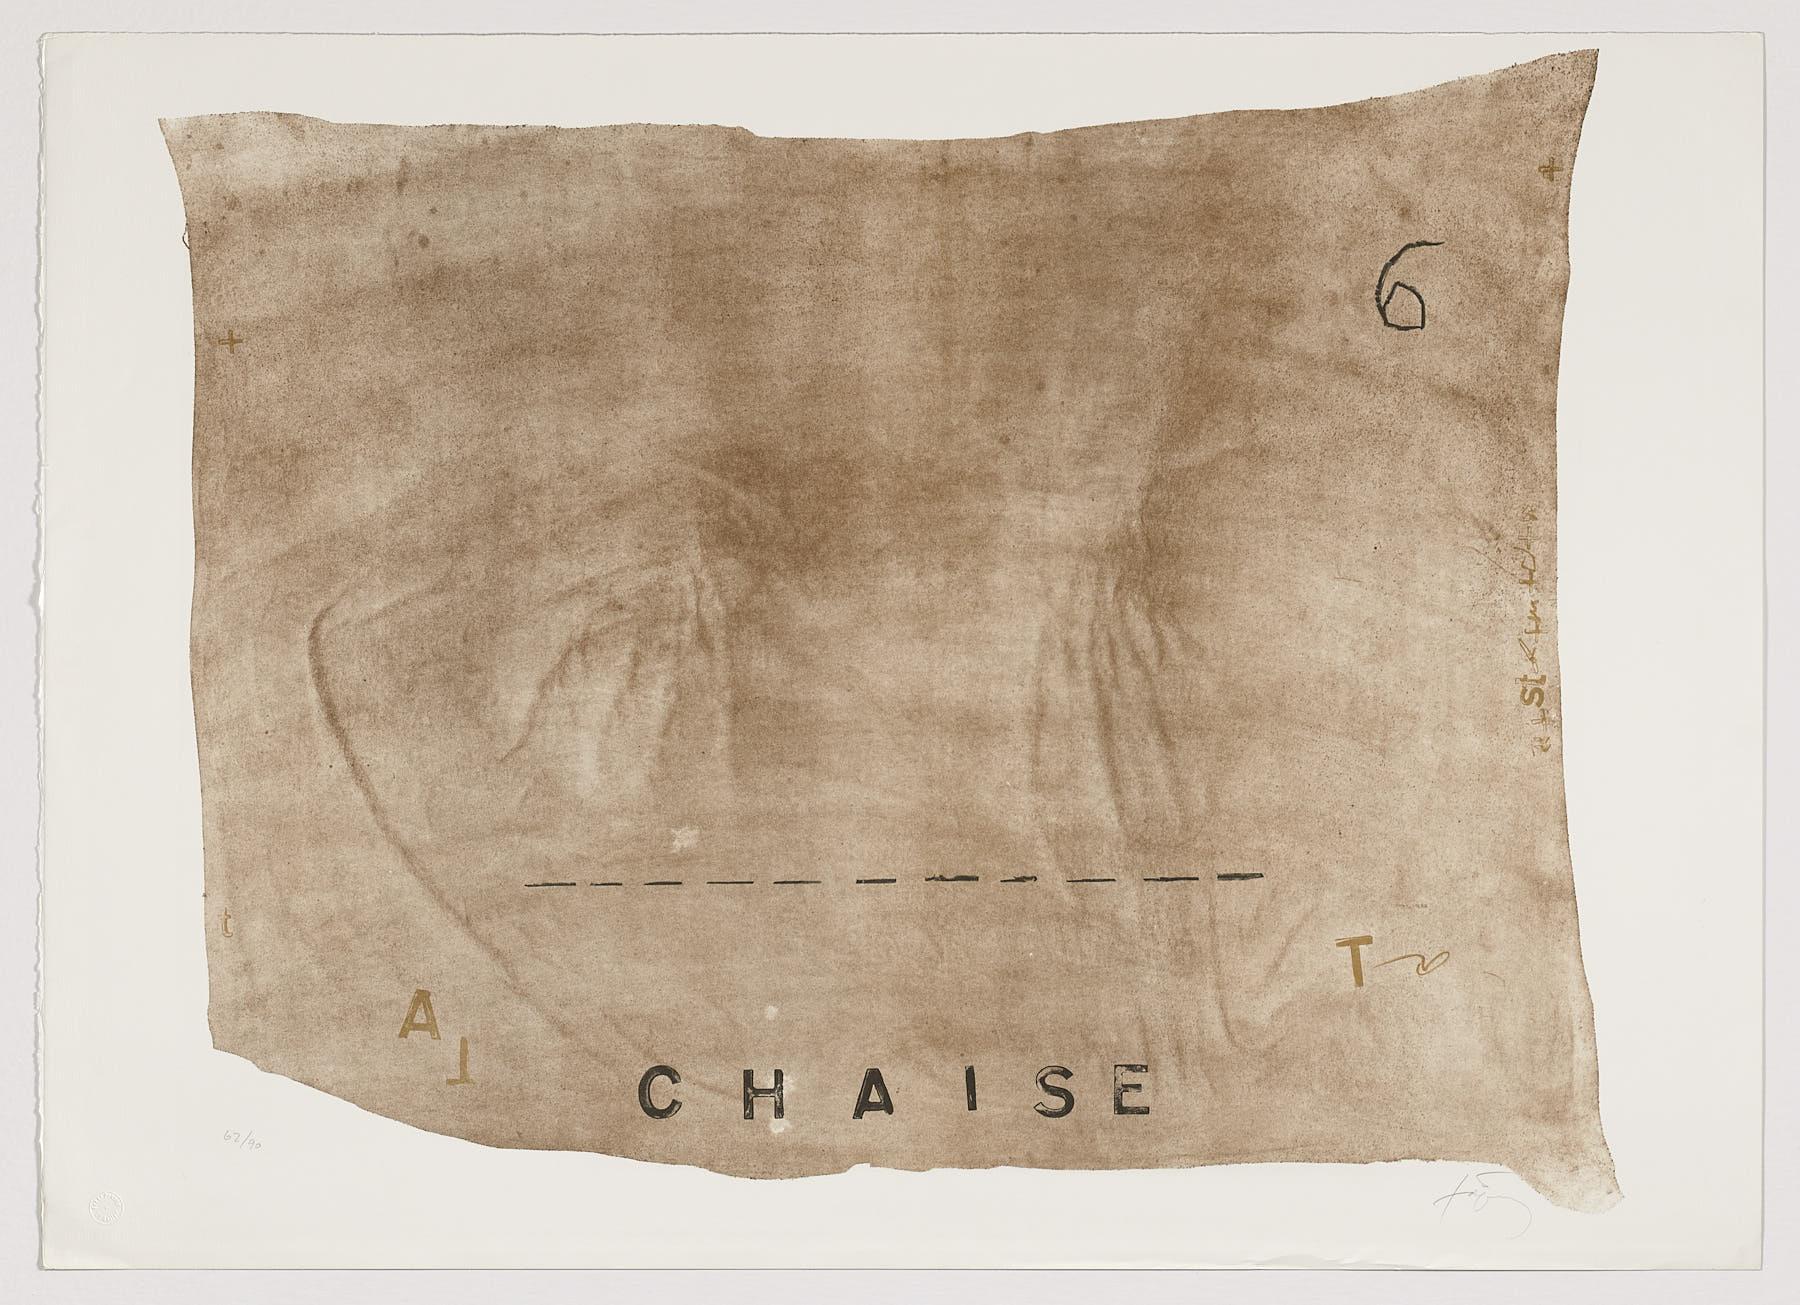 Antoni Tàpies Abstract Print – Spanische signierte, nummerierte Lithographie des spanischen Künstlers n27, Original-Kunstdrucks in limitierter Auflage